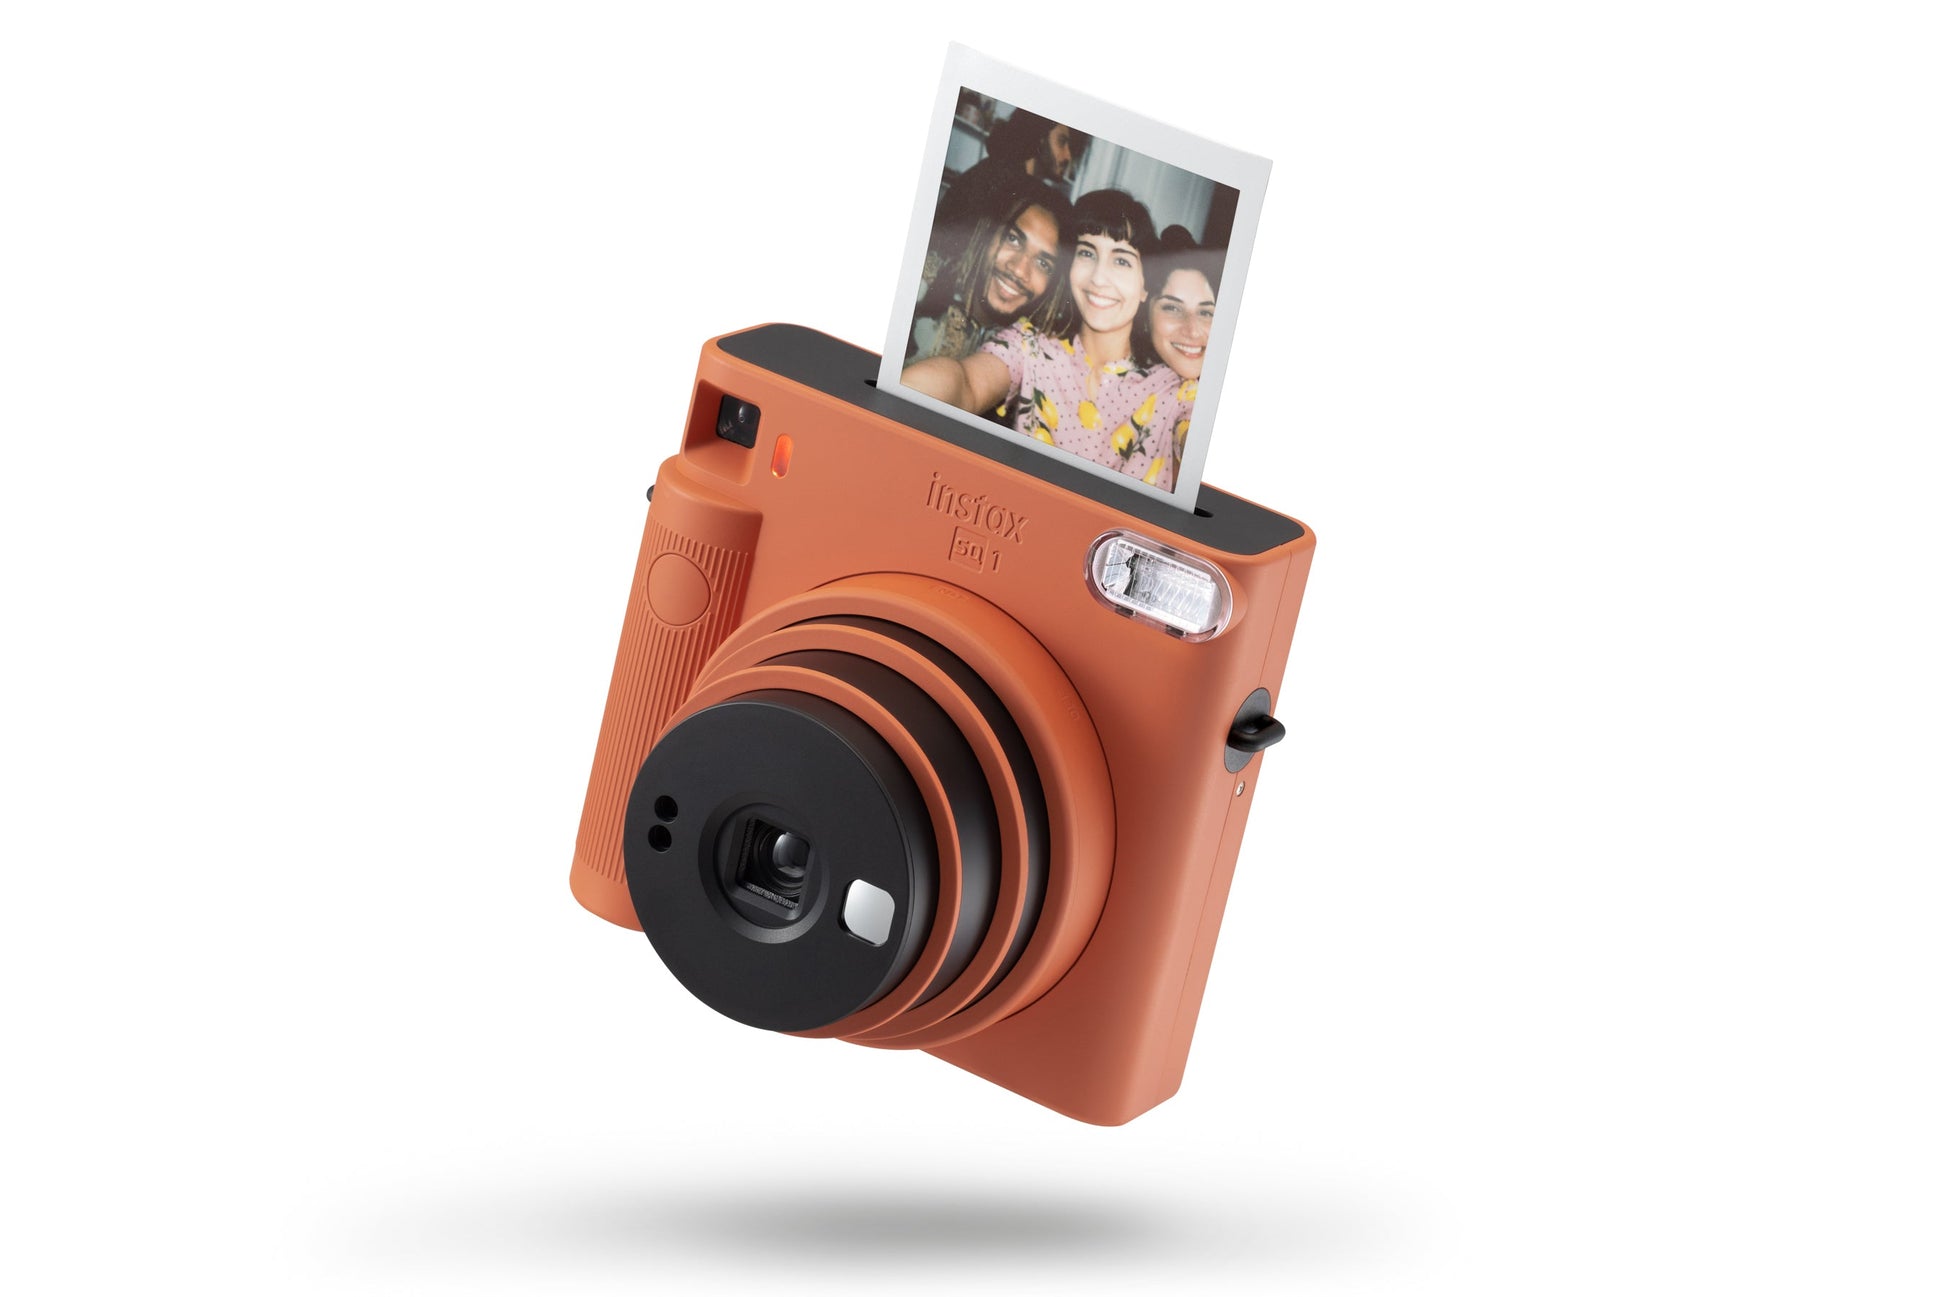 The Fujifilm Instax Square SQ1 Camera Review